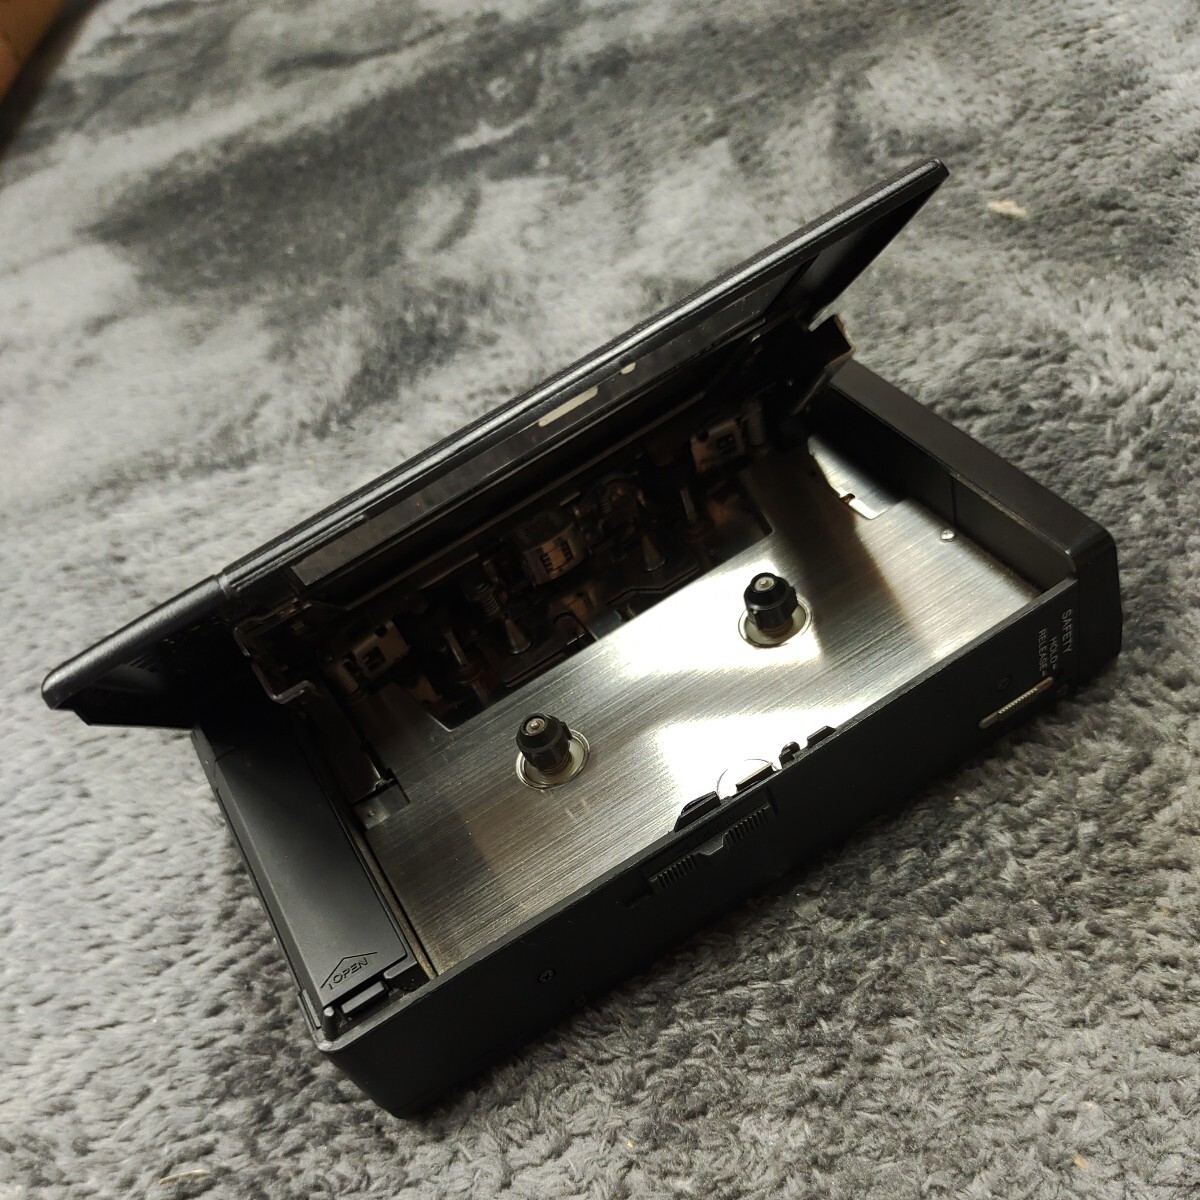 A042512 1 иен ~ электризация подтверждено SONY Sony WM-7 кассета Walkman портативный плеер кассетная магнитола звуковая аппаратура 